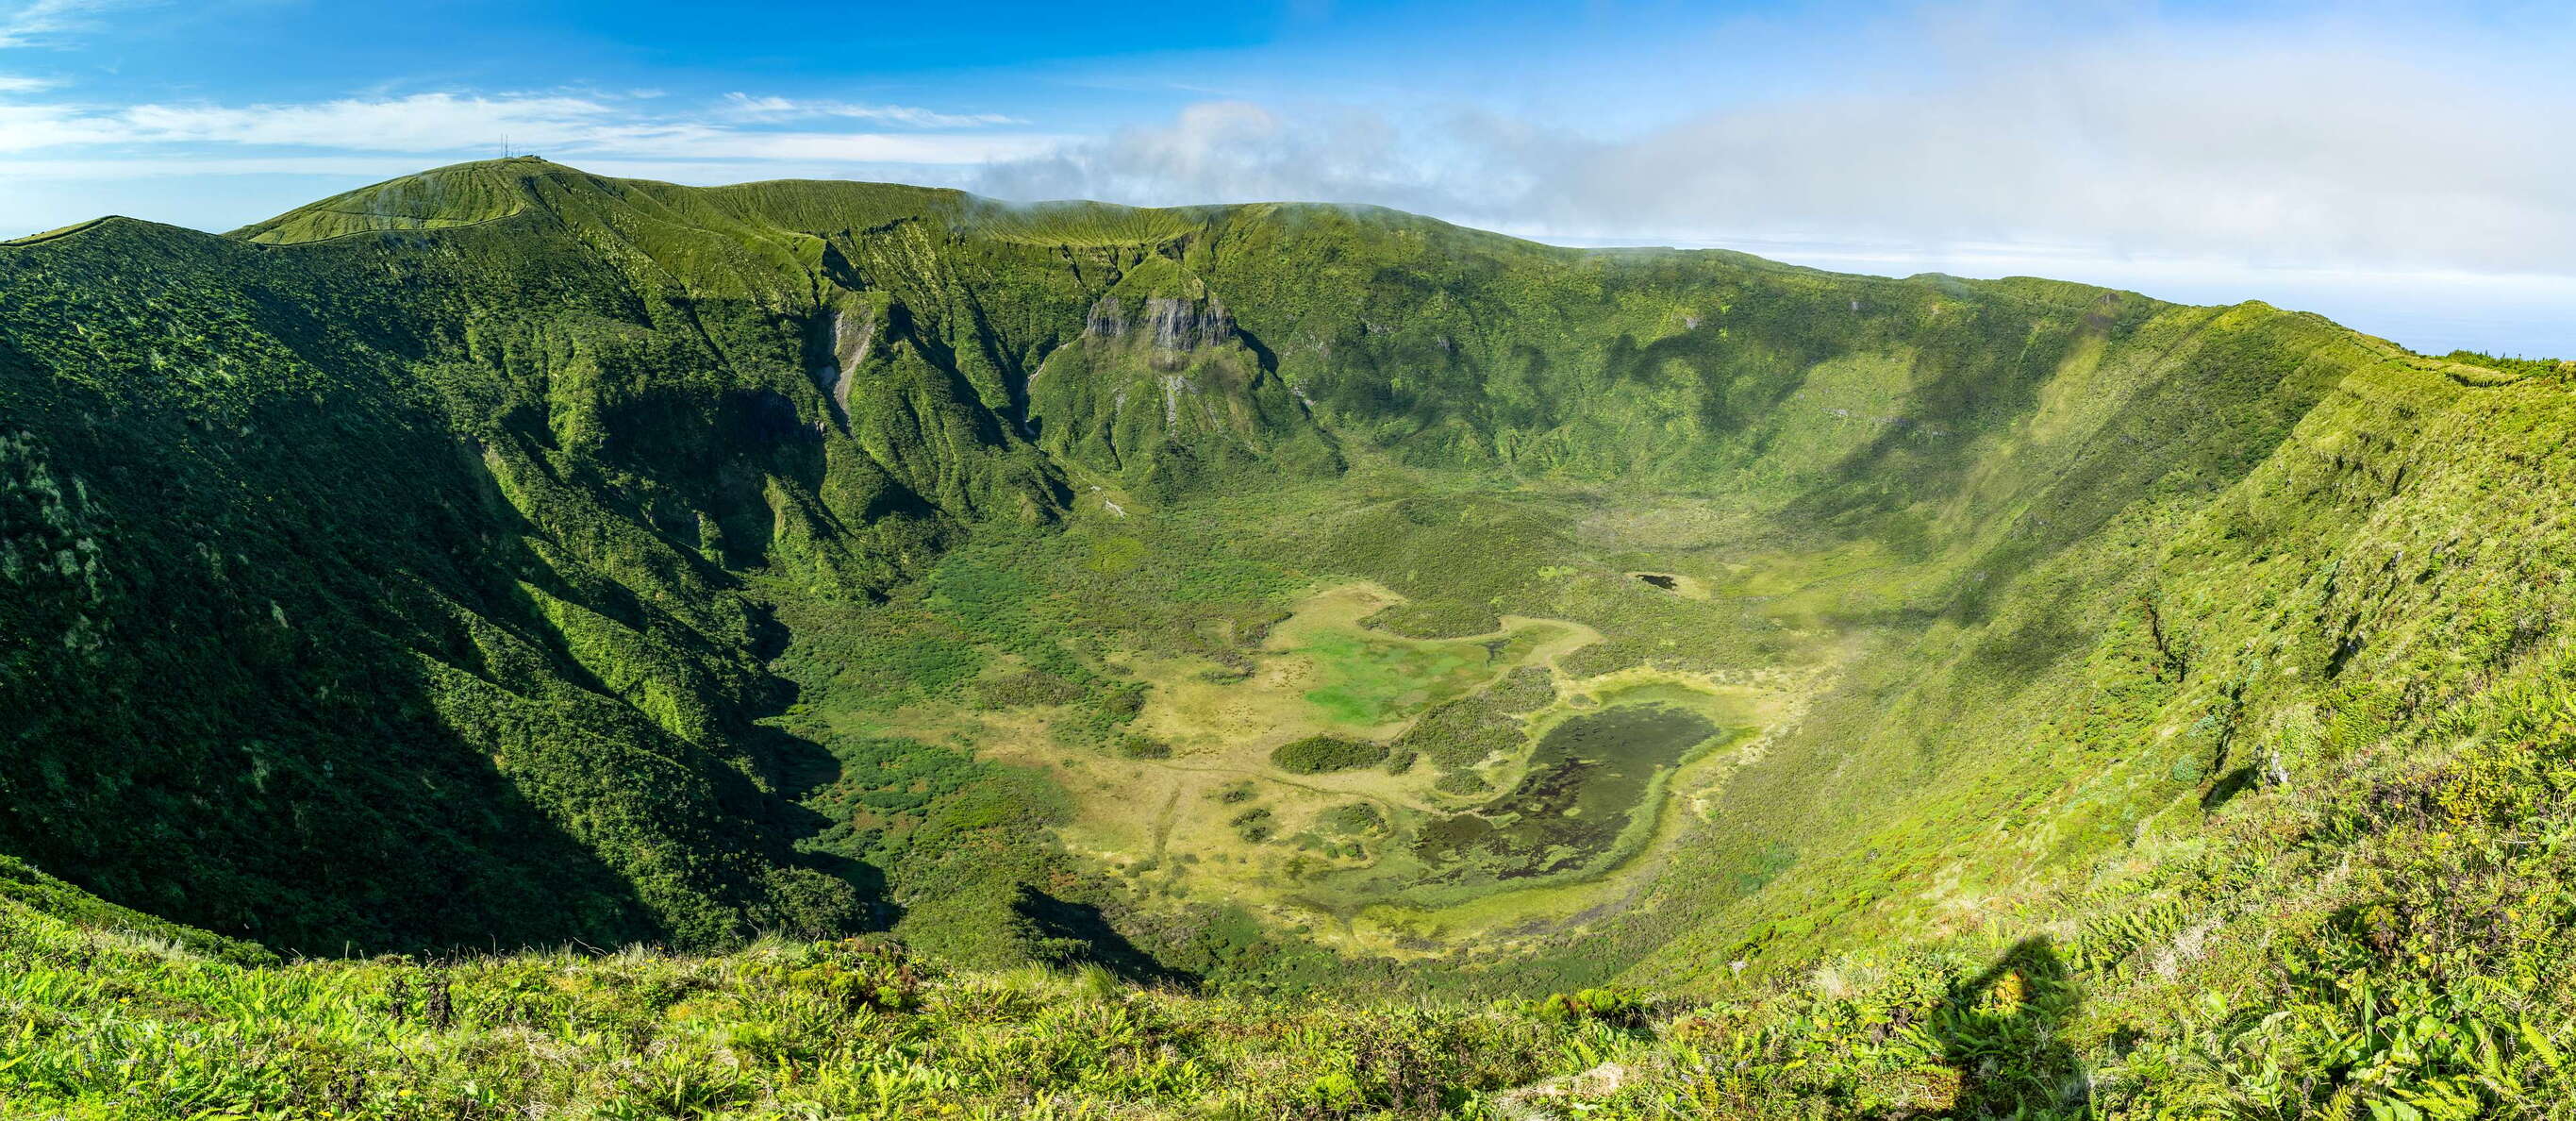 Vulcão da Caldeira | Panoramic view